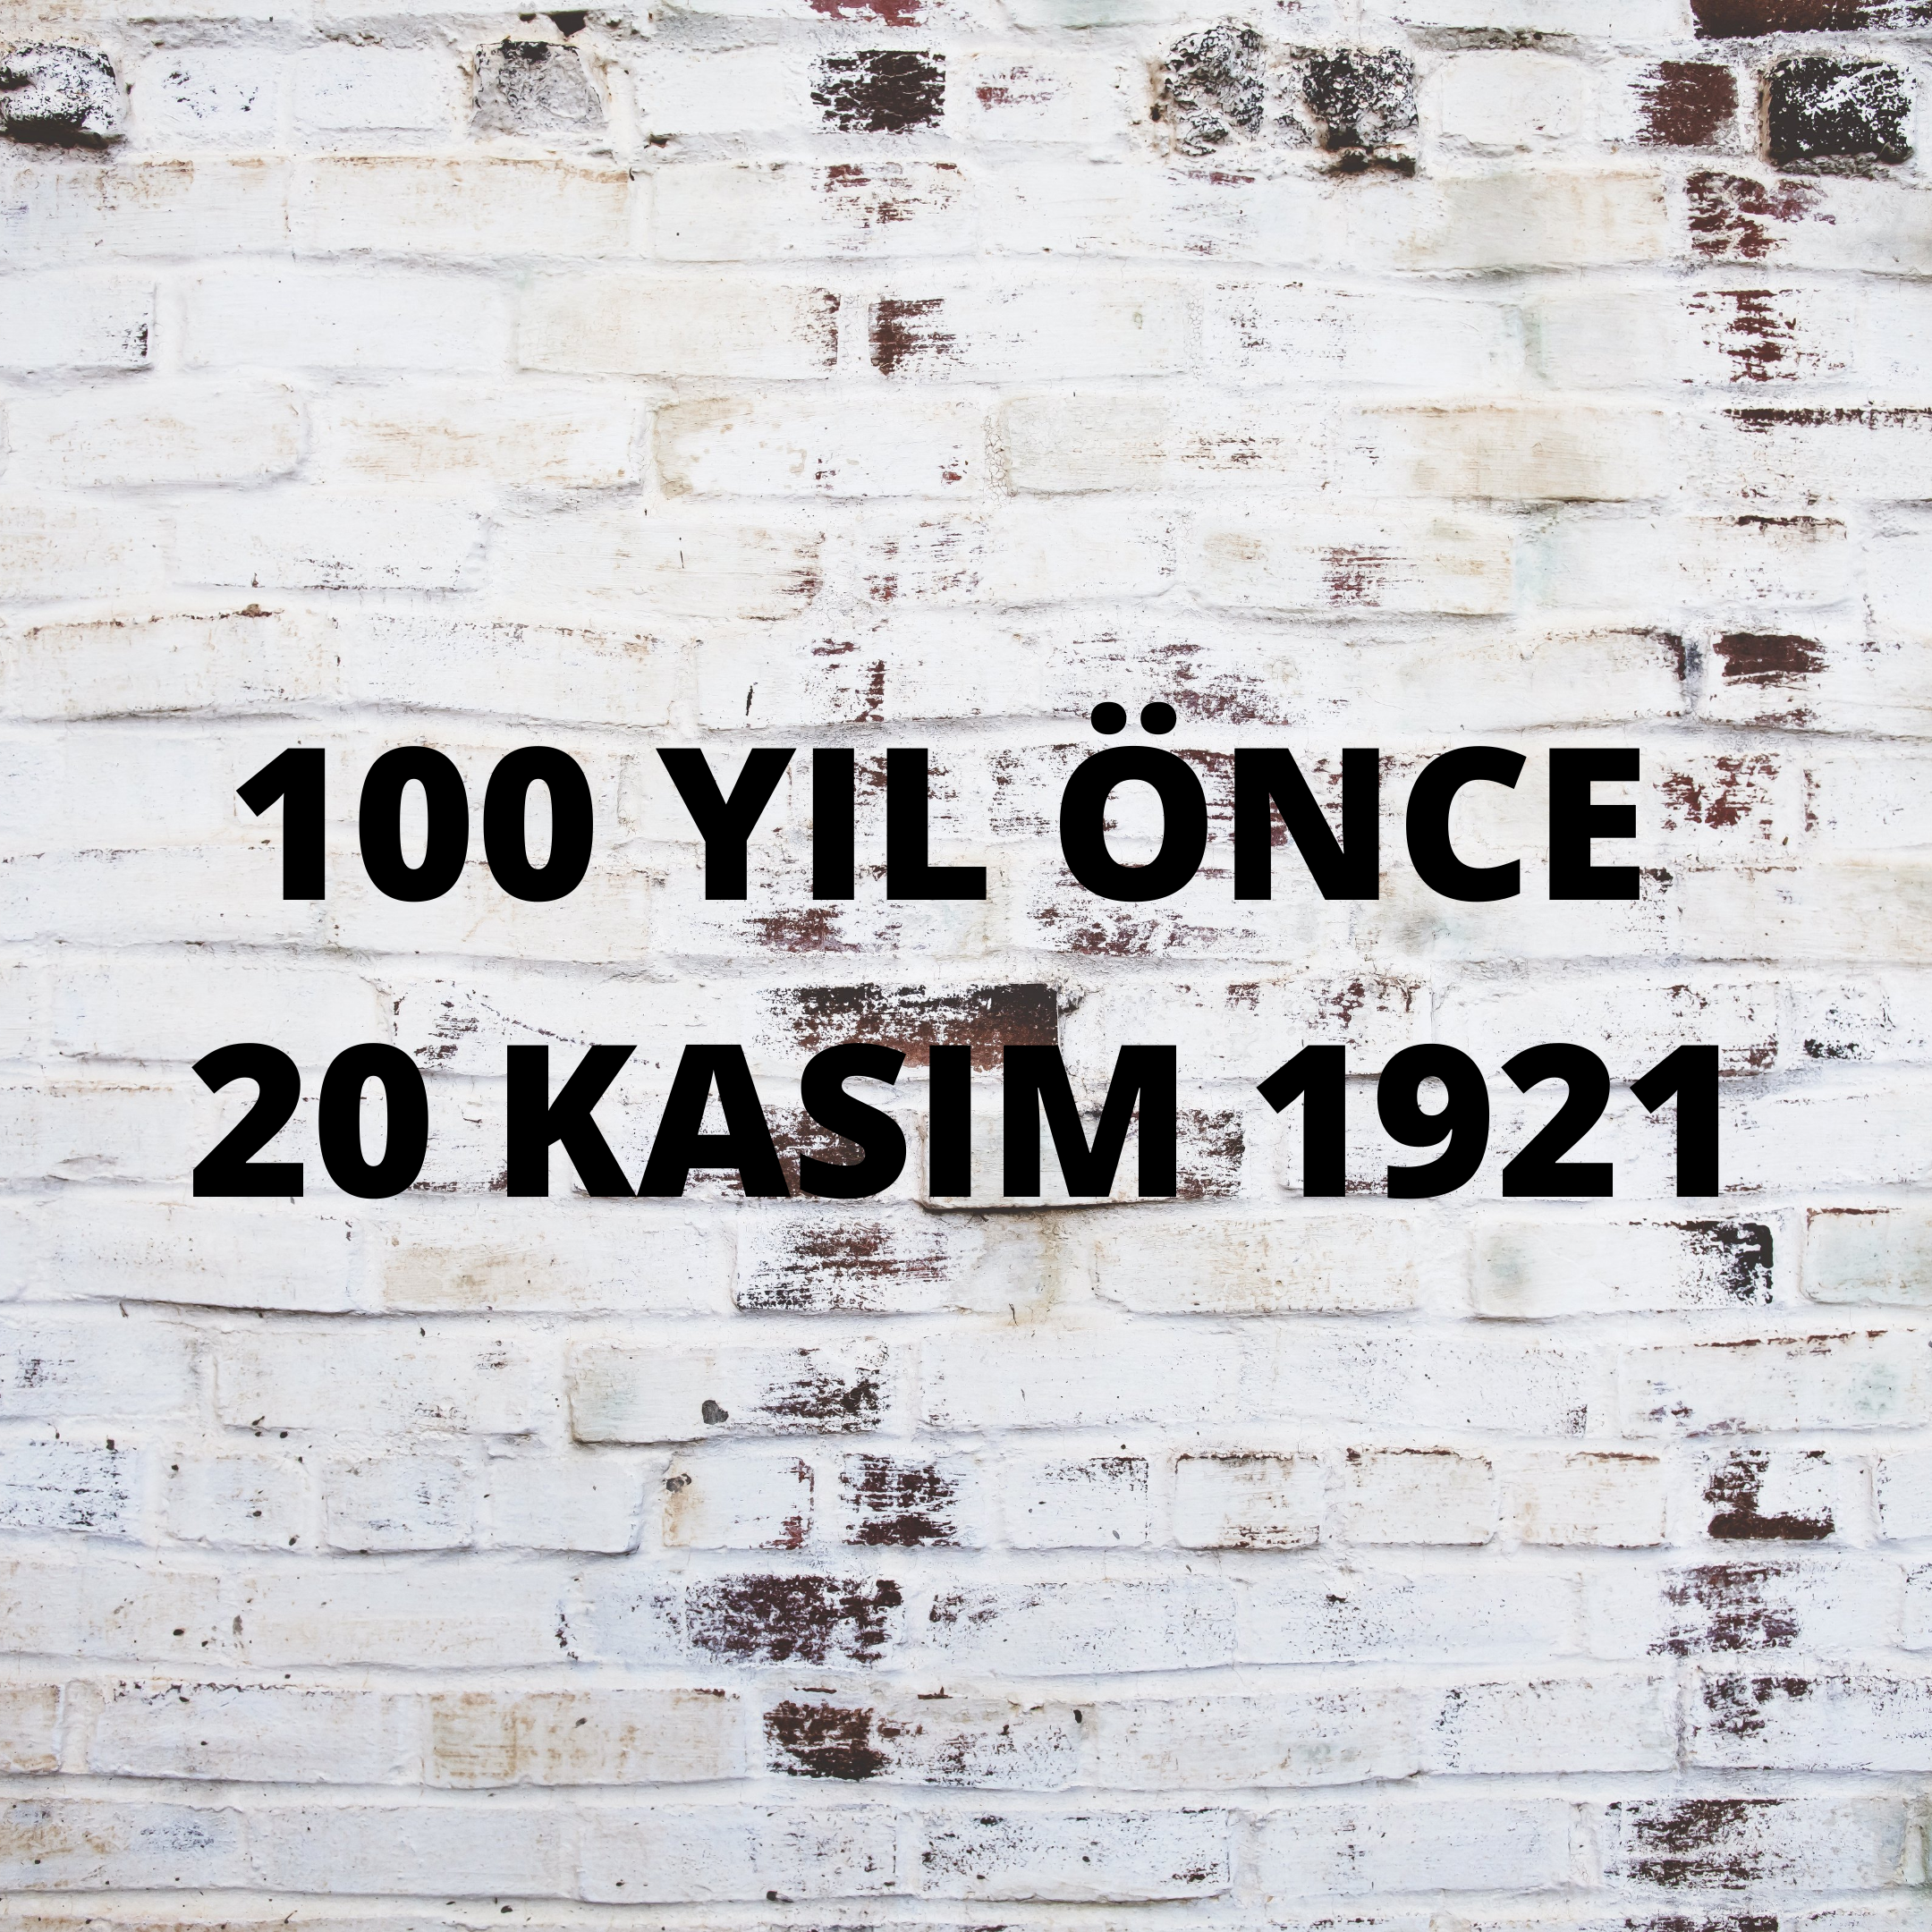 100 YIL ÖNCE 20 KASIM 1921